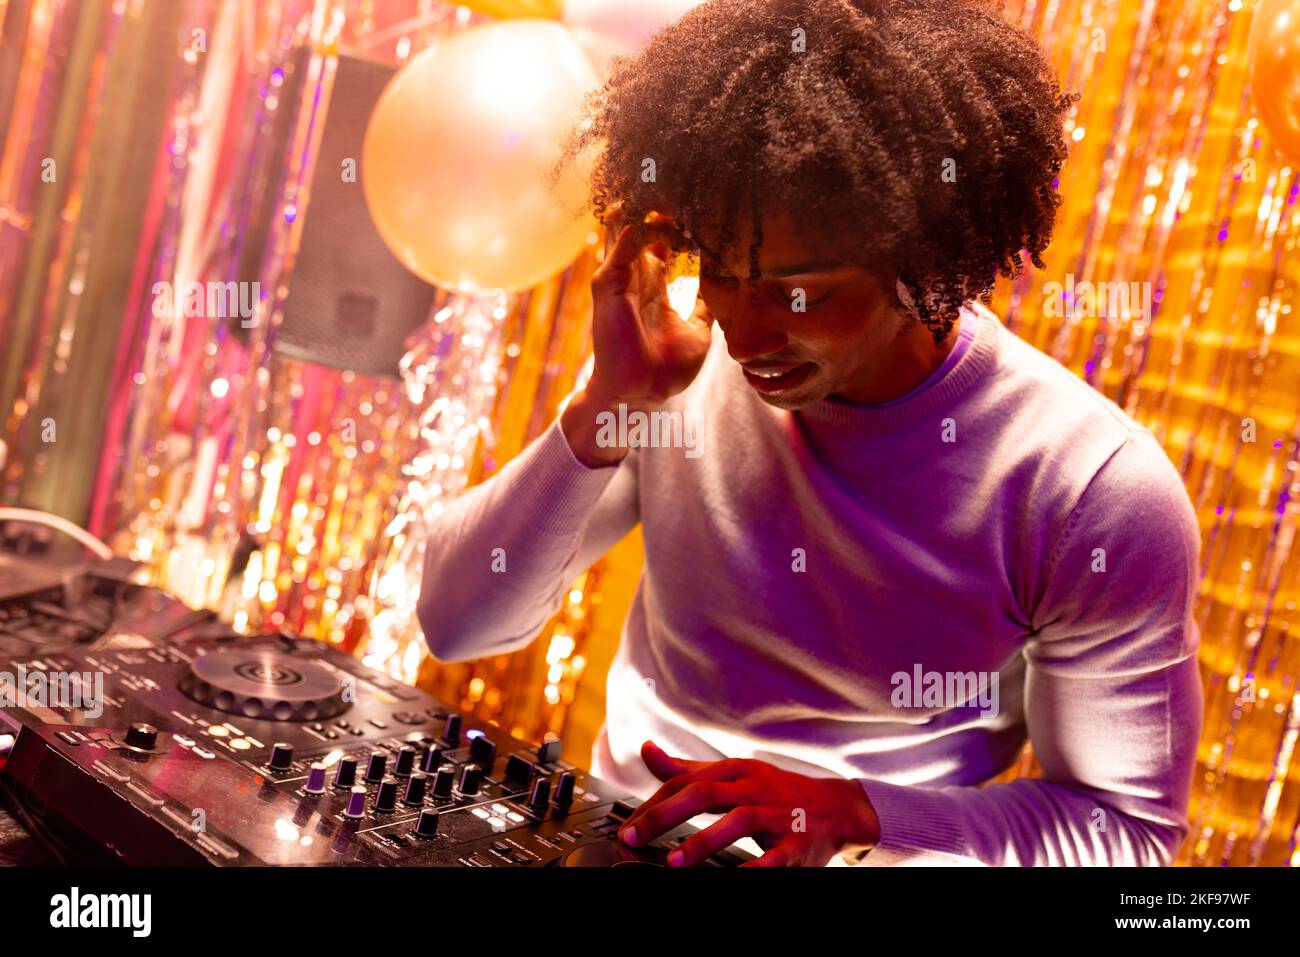 Un DJ afro-américain souriant joue de la musique dans une boîte de nuit et mélange Banque D'Images